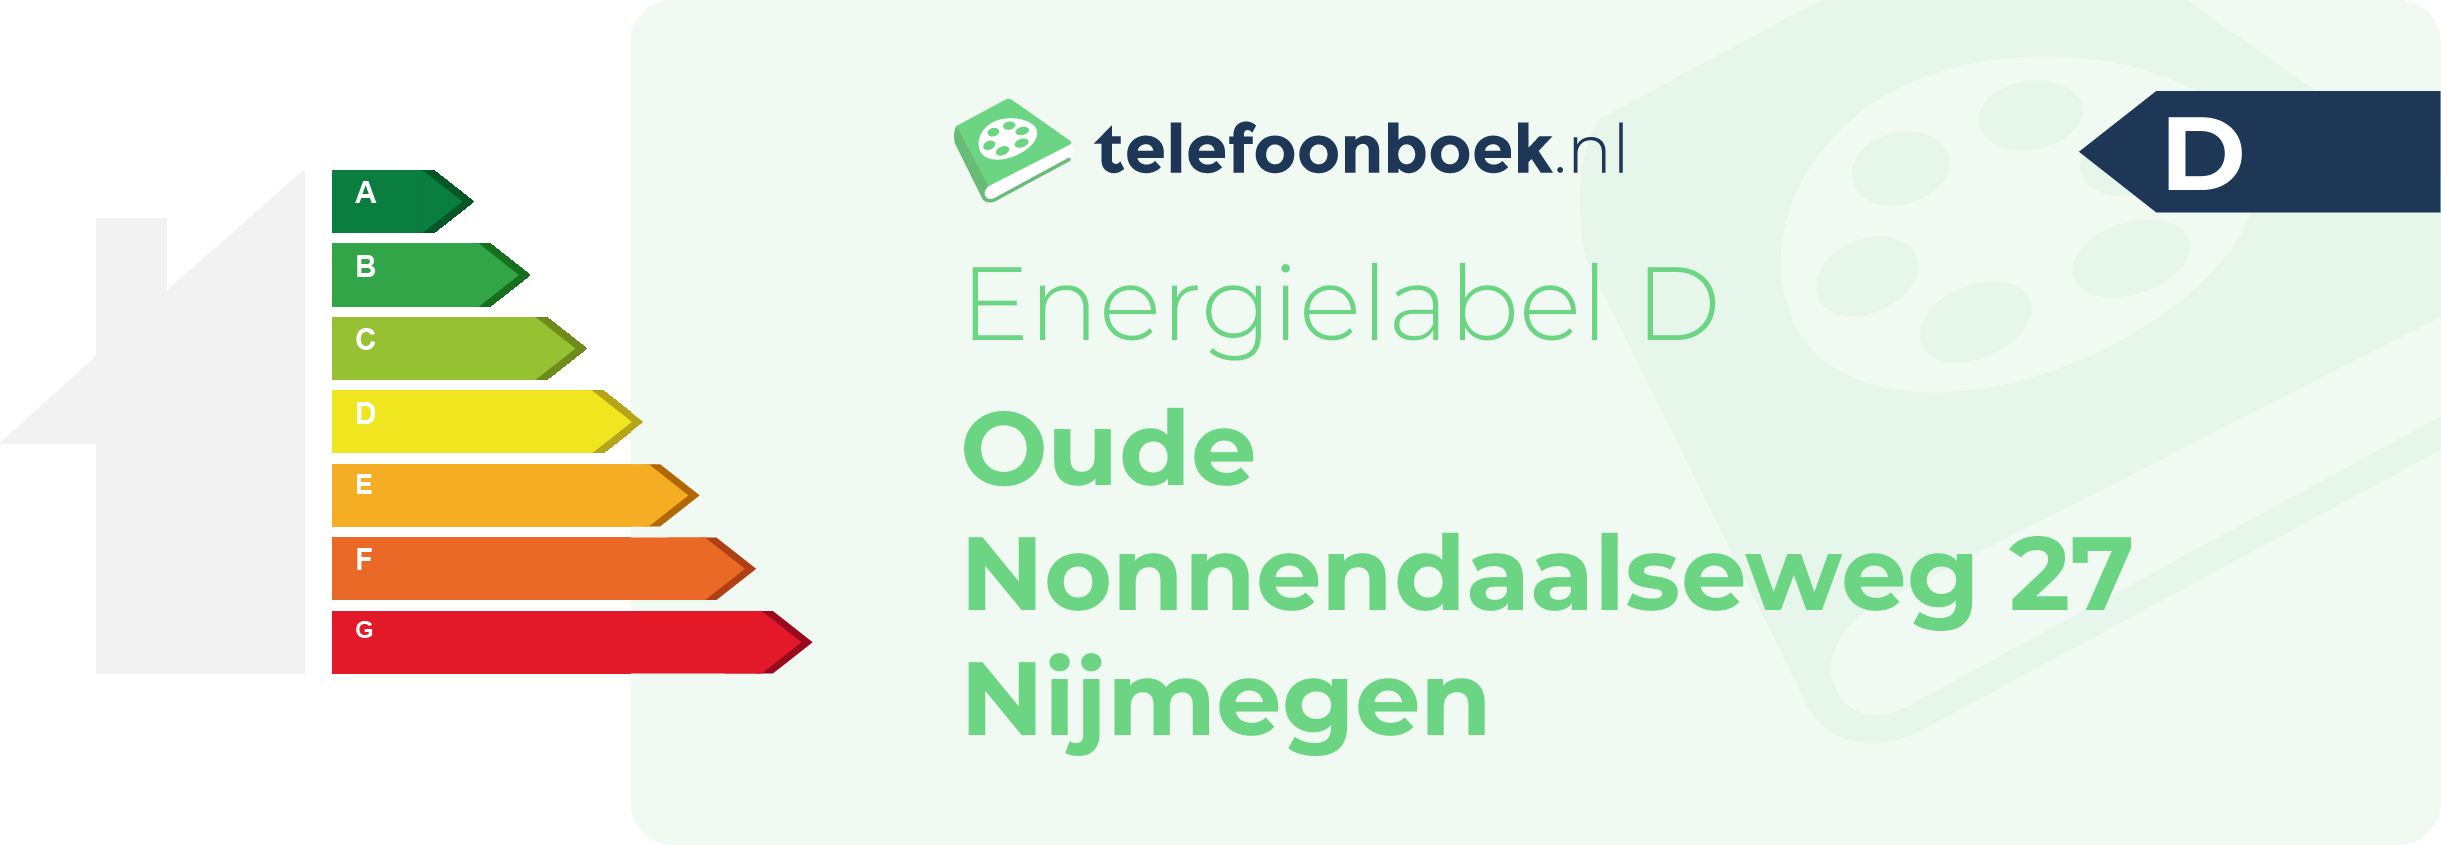 Energielabel Oude Nonnendaalseweg 27 Nijmegen